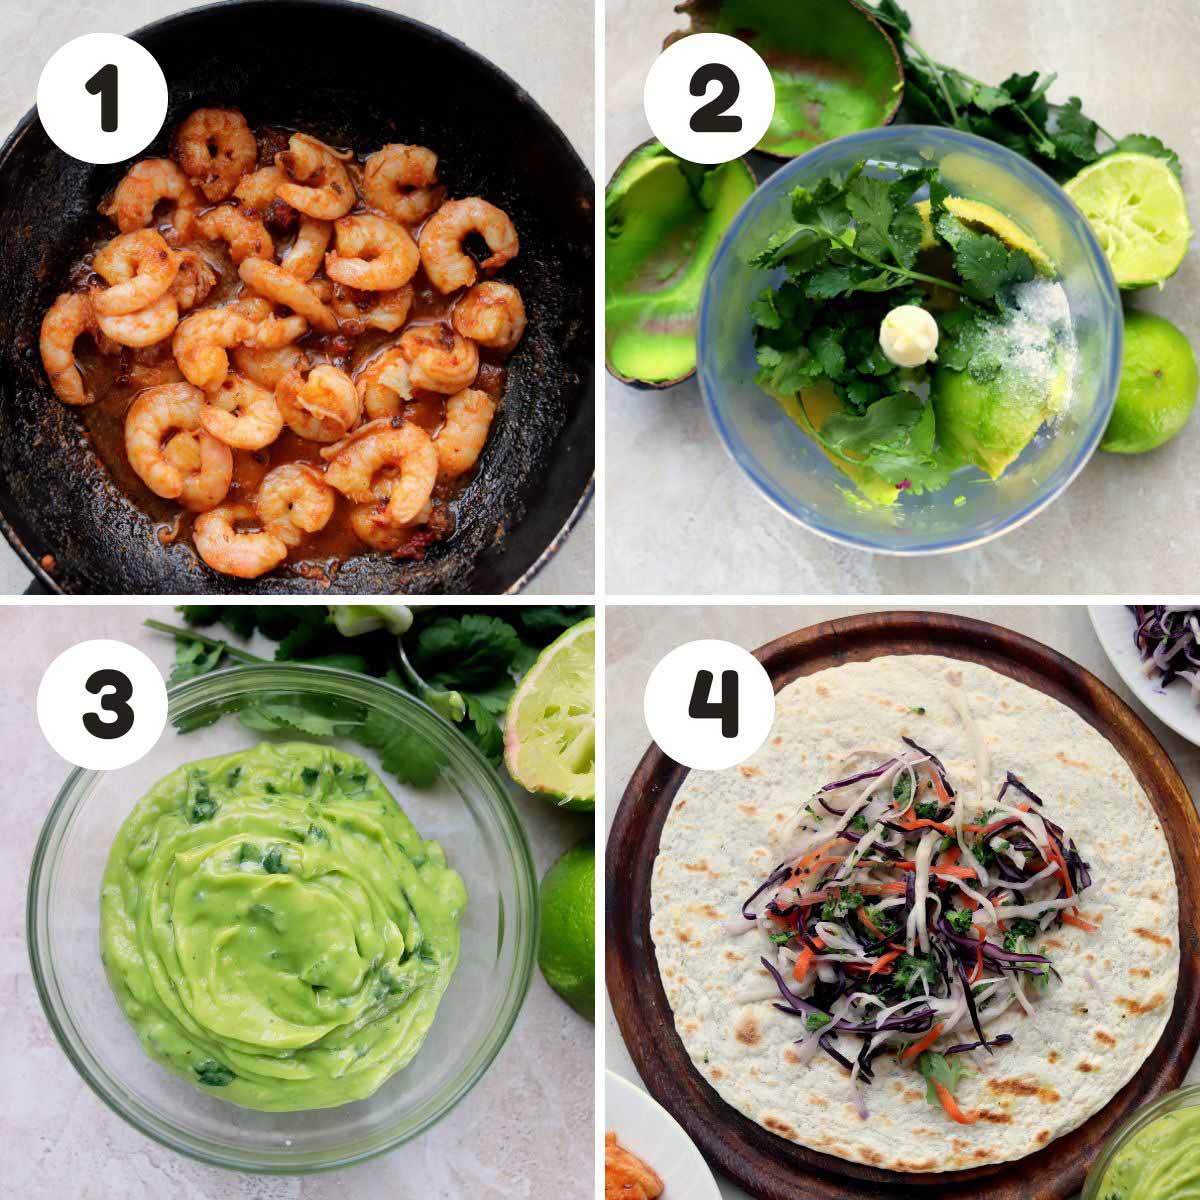 Steps to make the shrimp tacos.